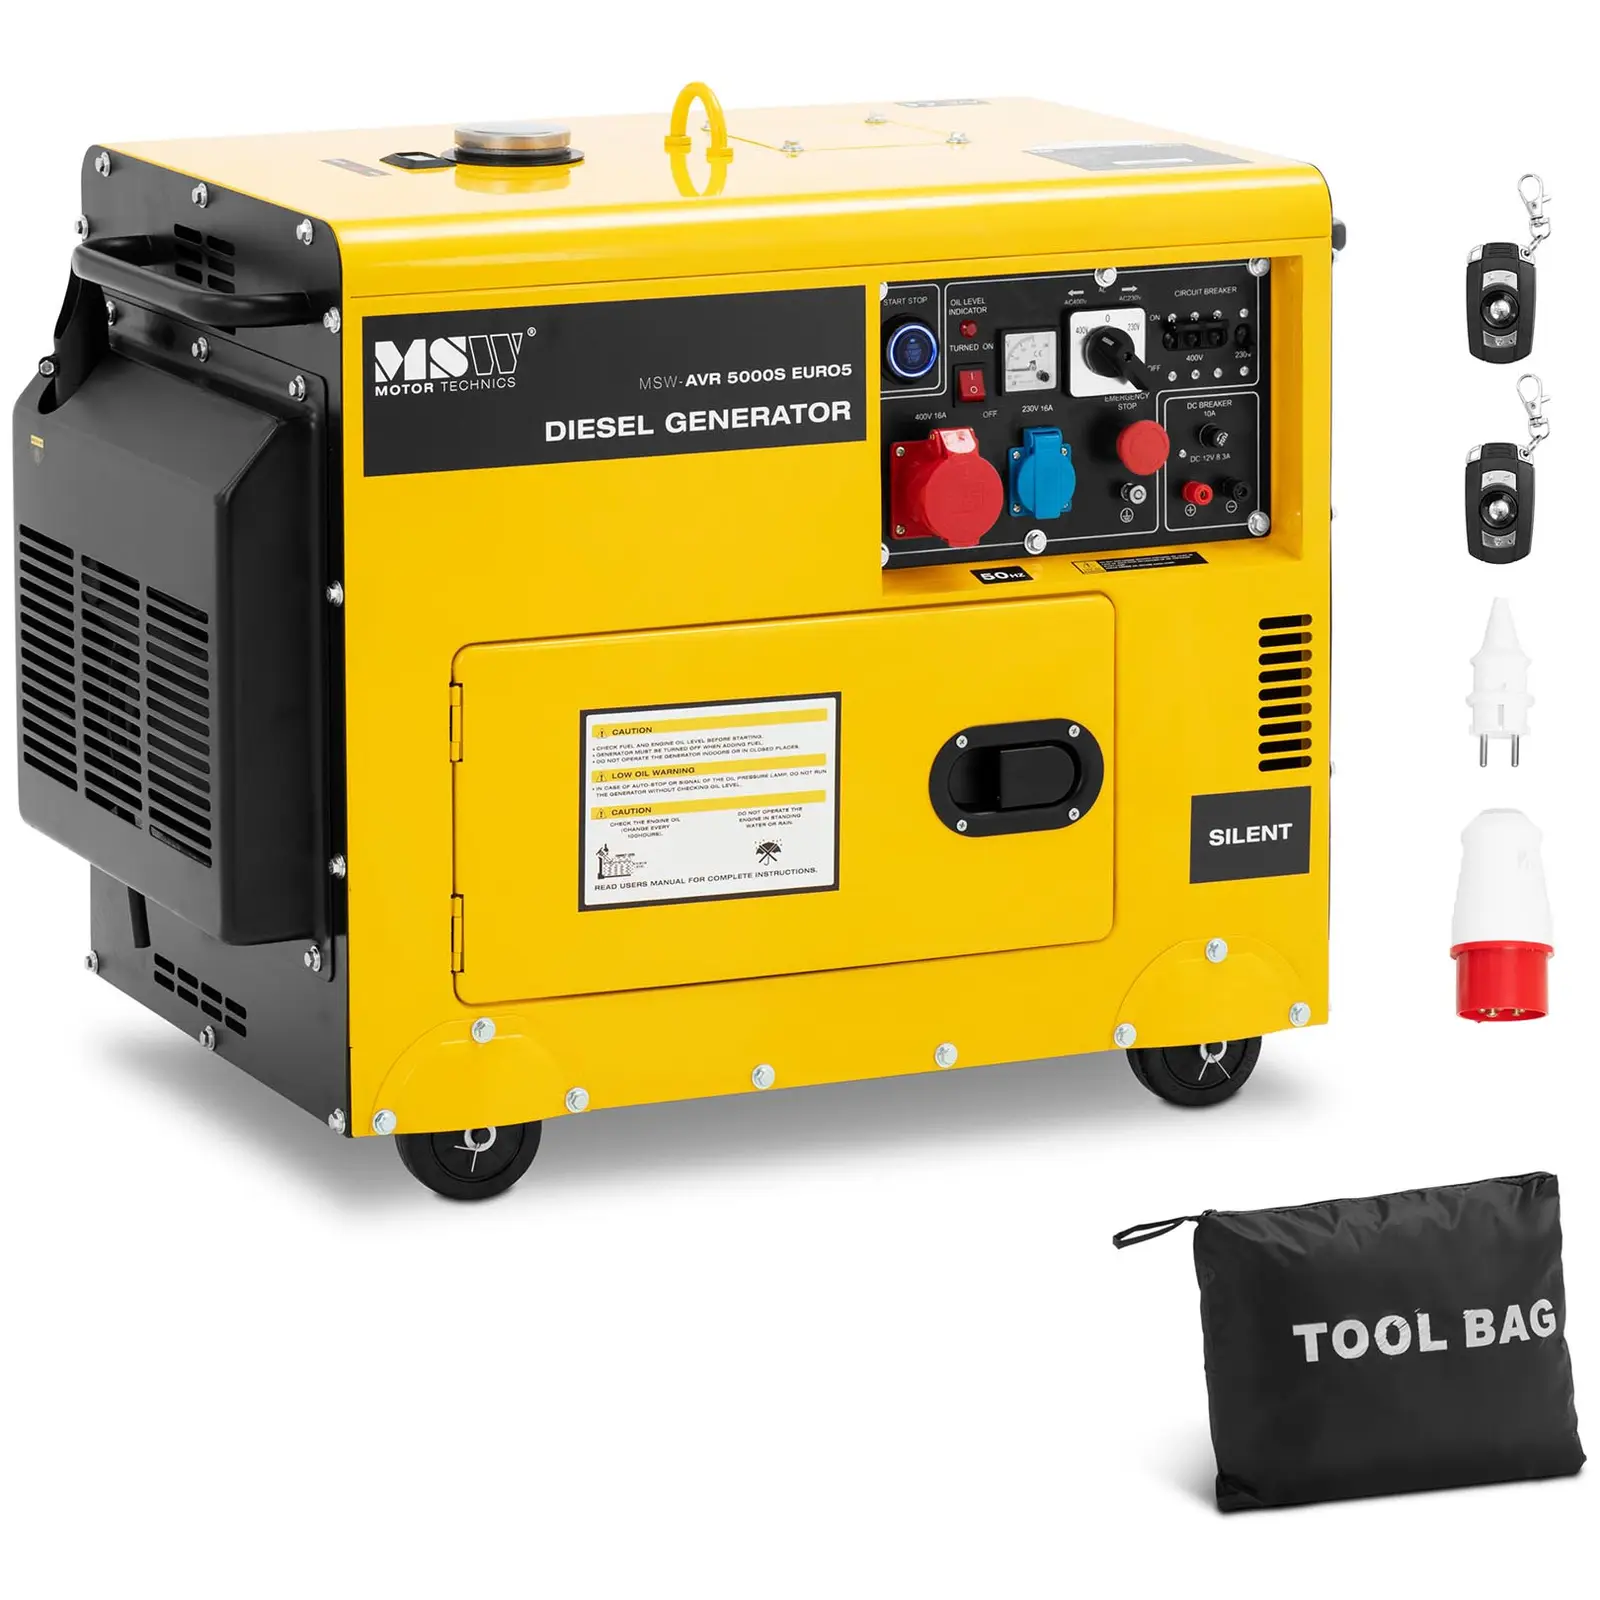 Diesel Generator - 5000 W - 16 L - 240/400 V - mobile - AVR - Euro 5